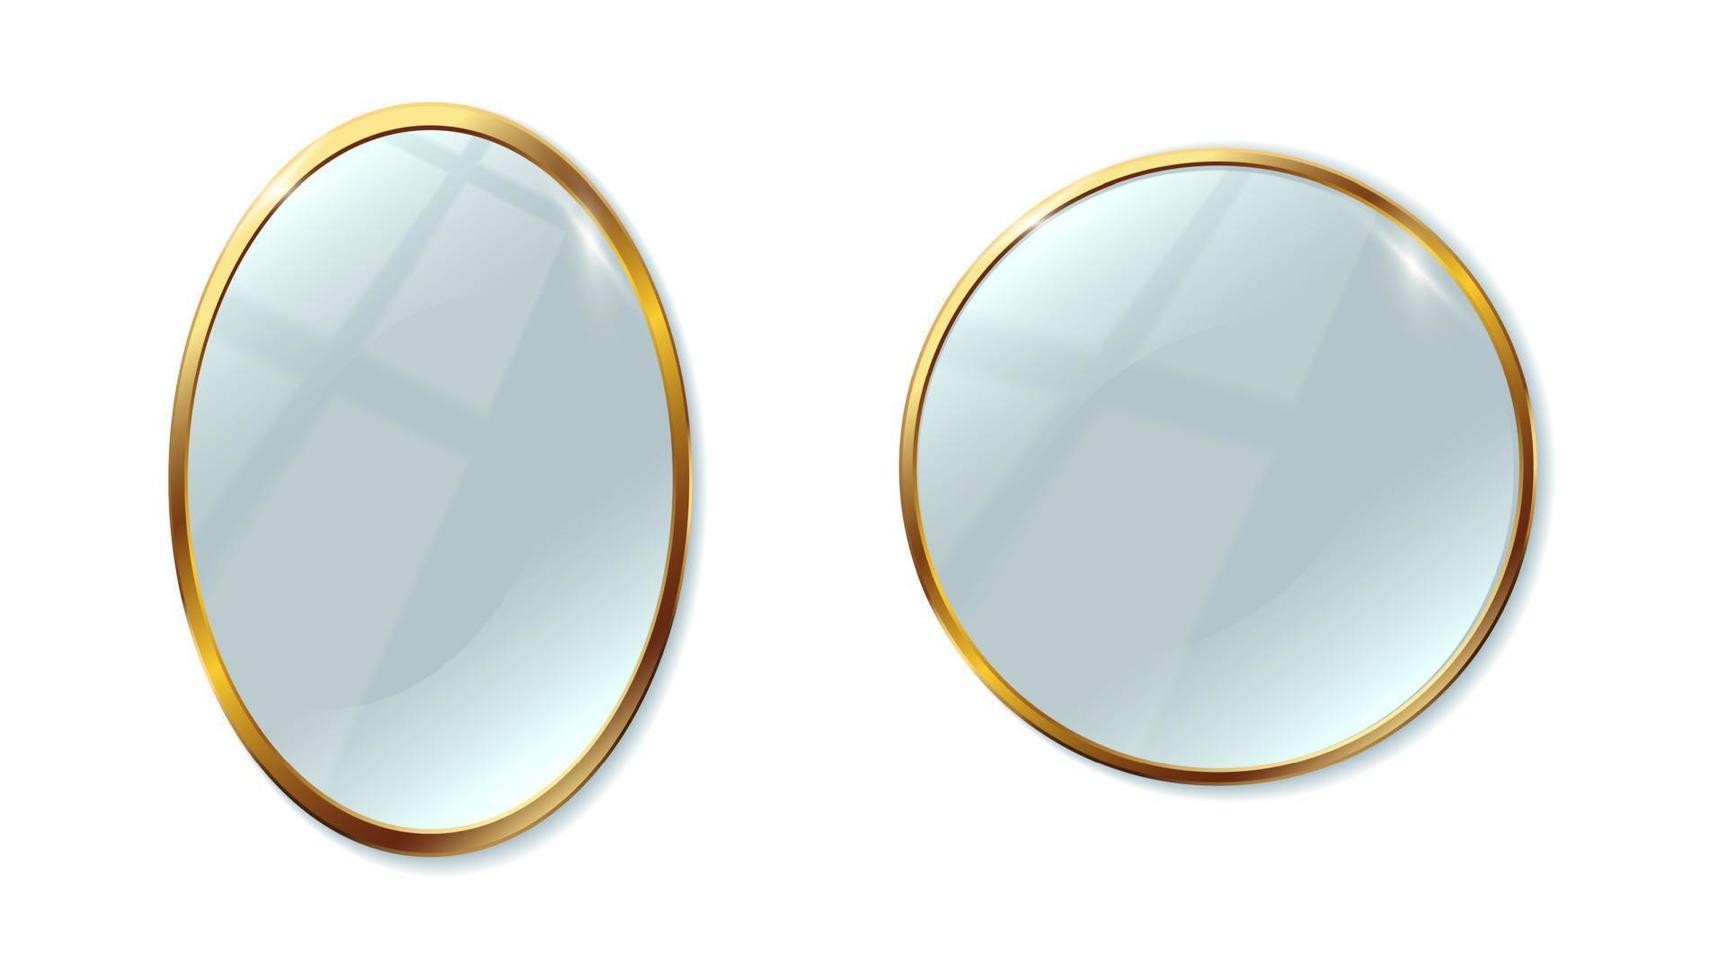 Conjunto de iconos vectoriales realistas en 3D. dos espejos con marco dorado ovalados y redondos. aislado sobre fondo blanco. vector